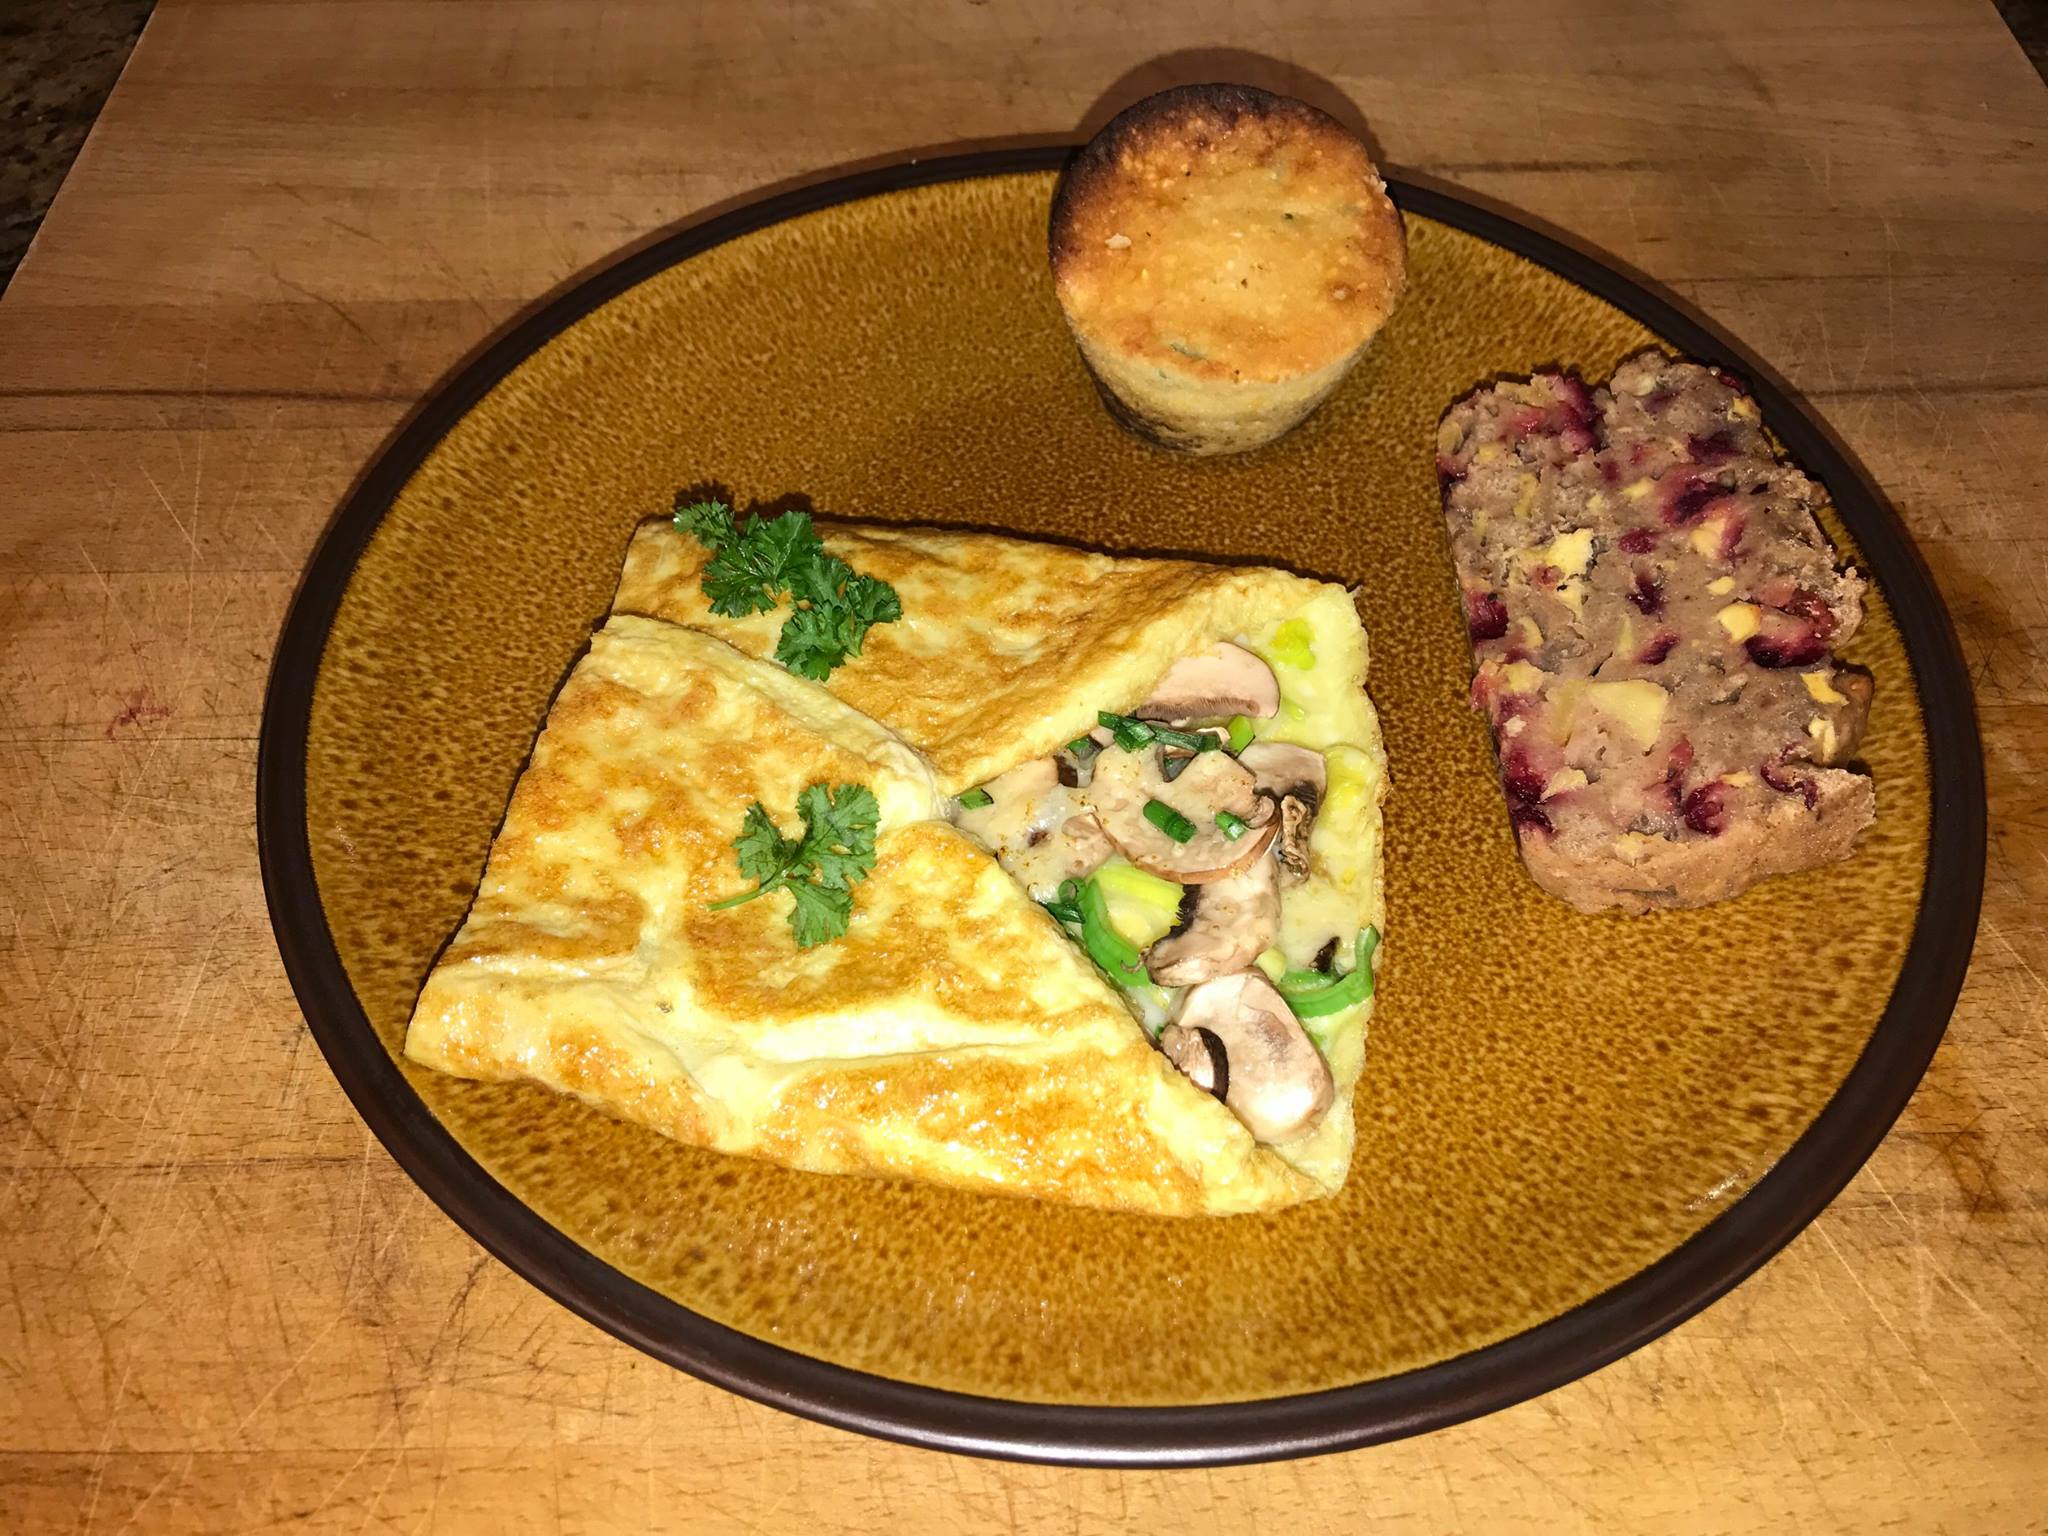 Yesterday’s brunch.  Irene wanted leek and mushroom omelette